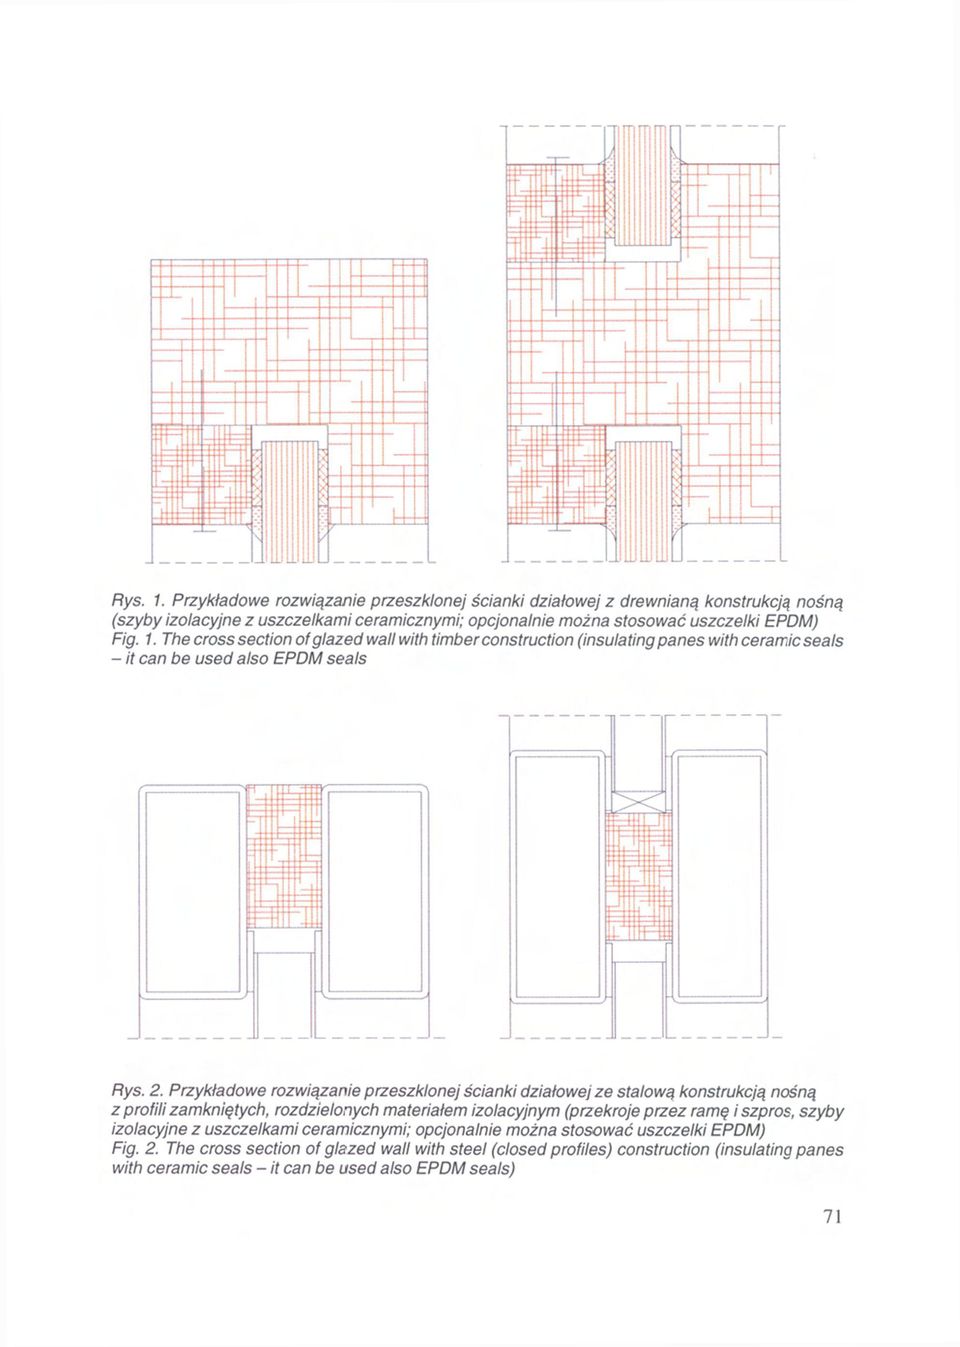 Przykładowe rozwiązanie przeszklonej ścianki działowej ze stalową konstrukcją nośną z profili zamkniętych, rozdzielonych materiałem izolacyjnym (przekroje przez ramę i szpros, szyby